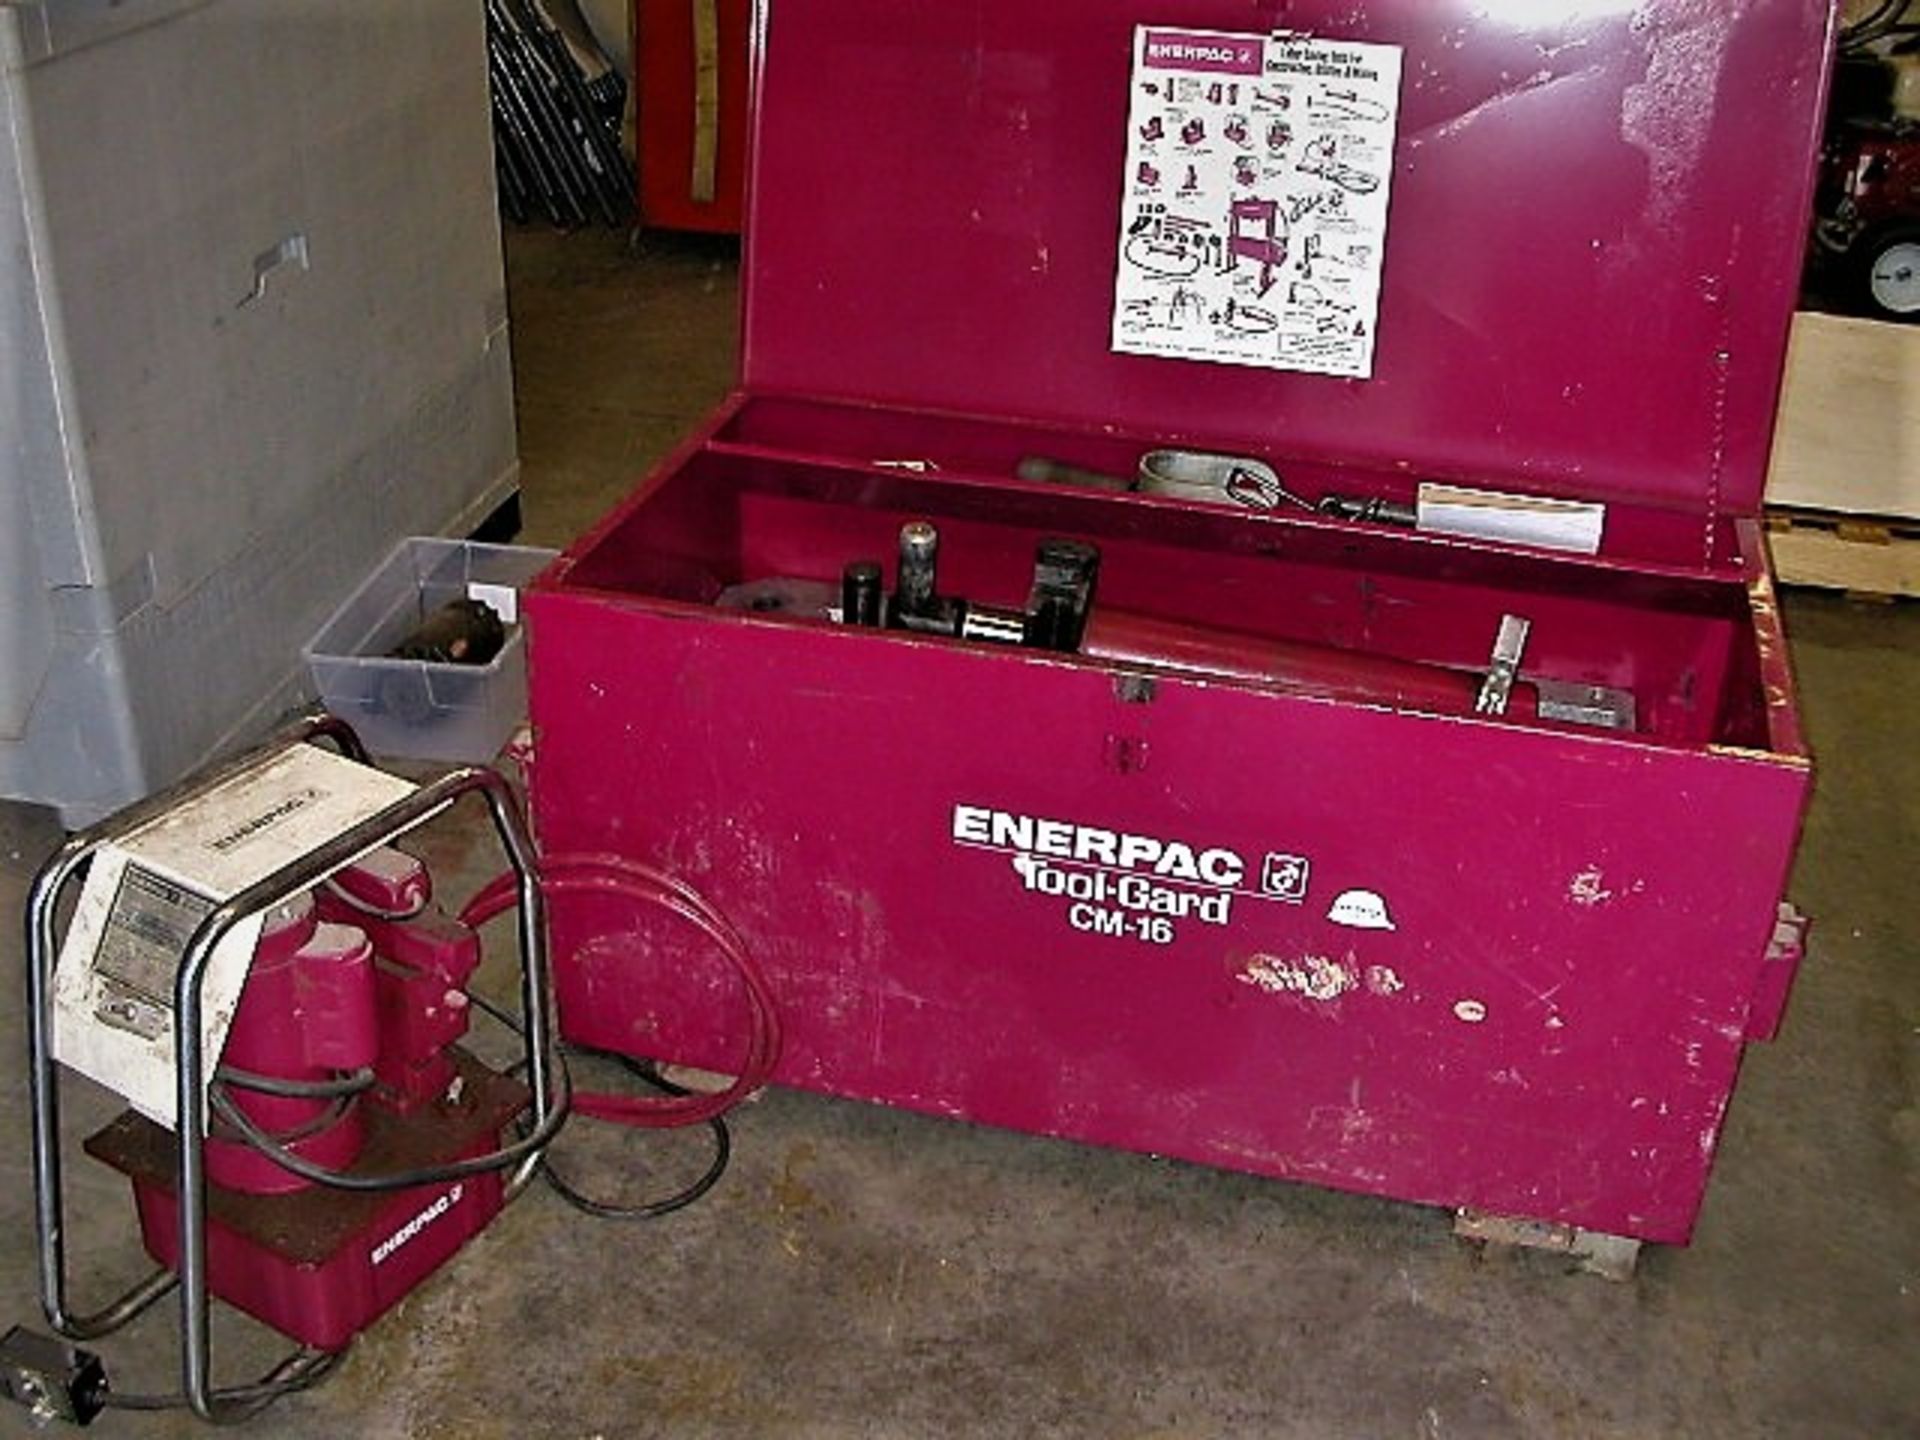 Enerpac EEGOR - Multi-Purpose Hydraulic Bender & EnerPac Pump in Toolguard CM-16 Job Box